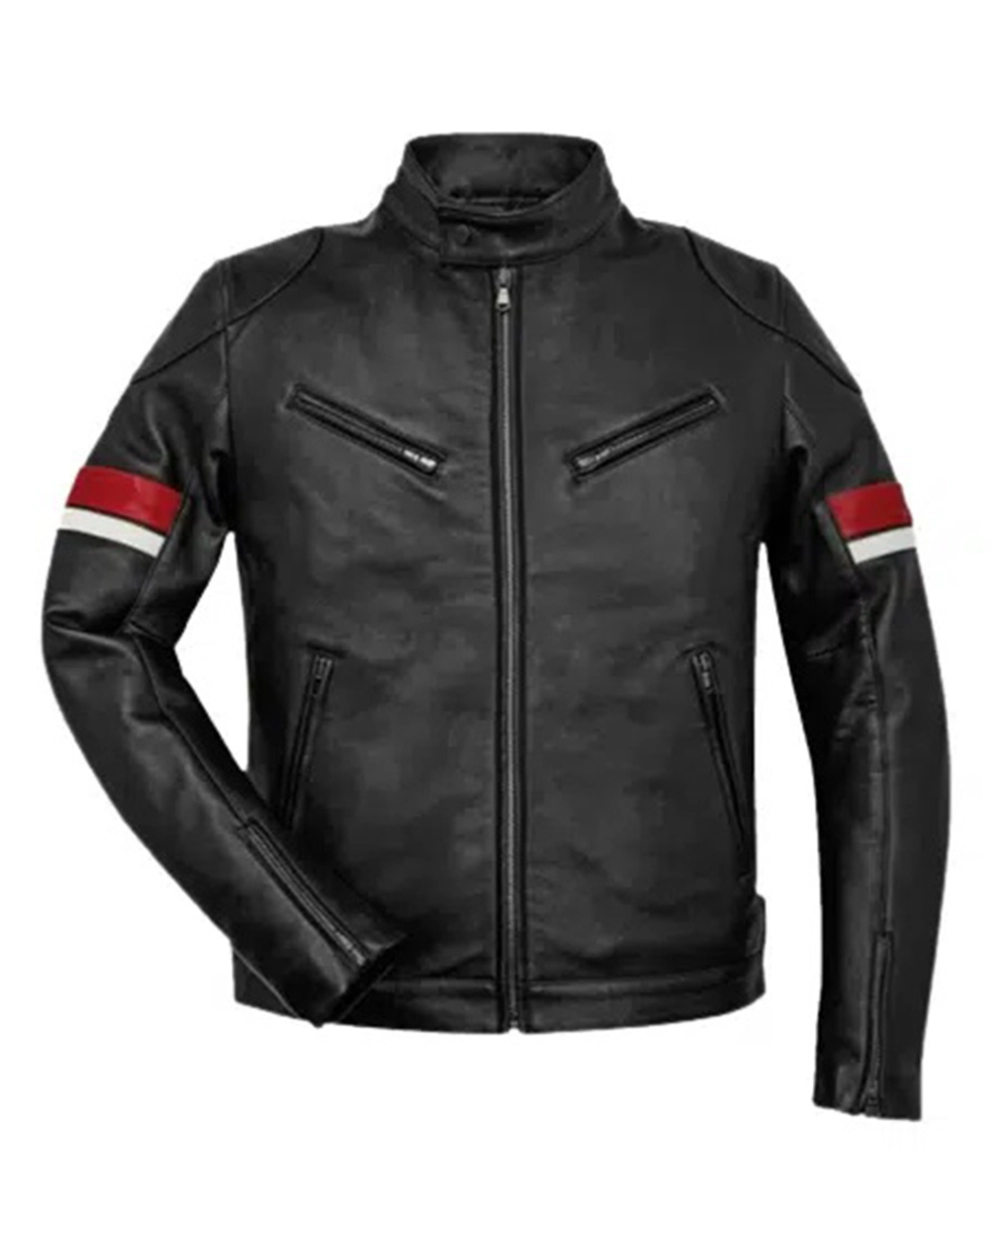 Buy Union Leather Jacket